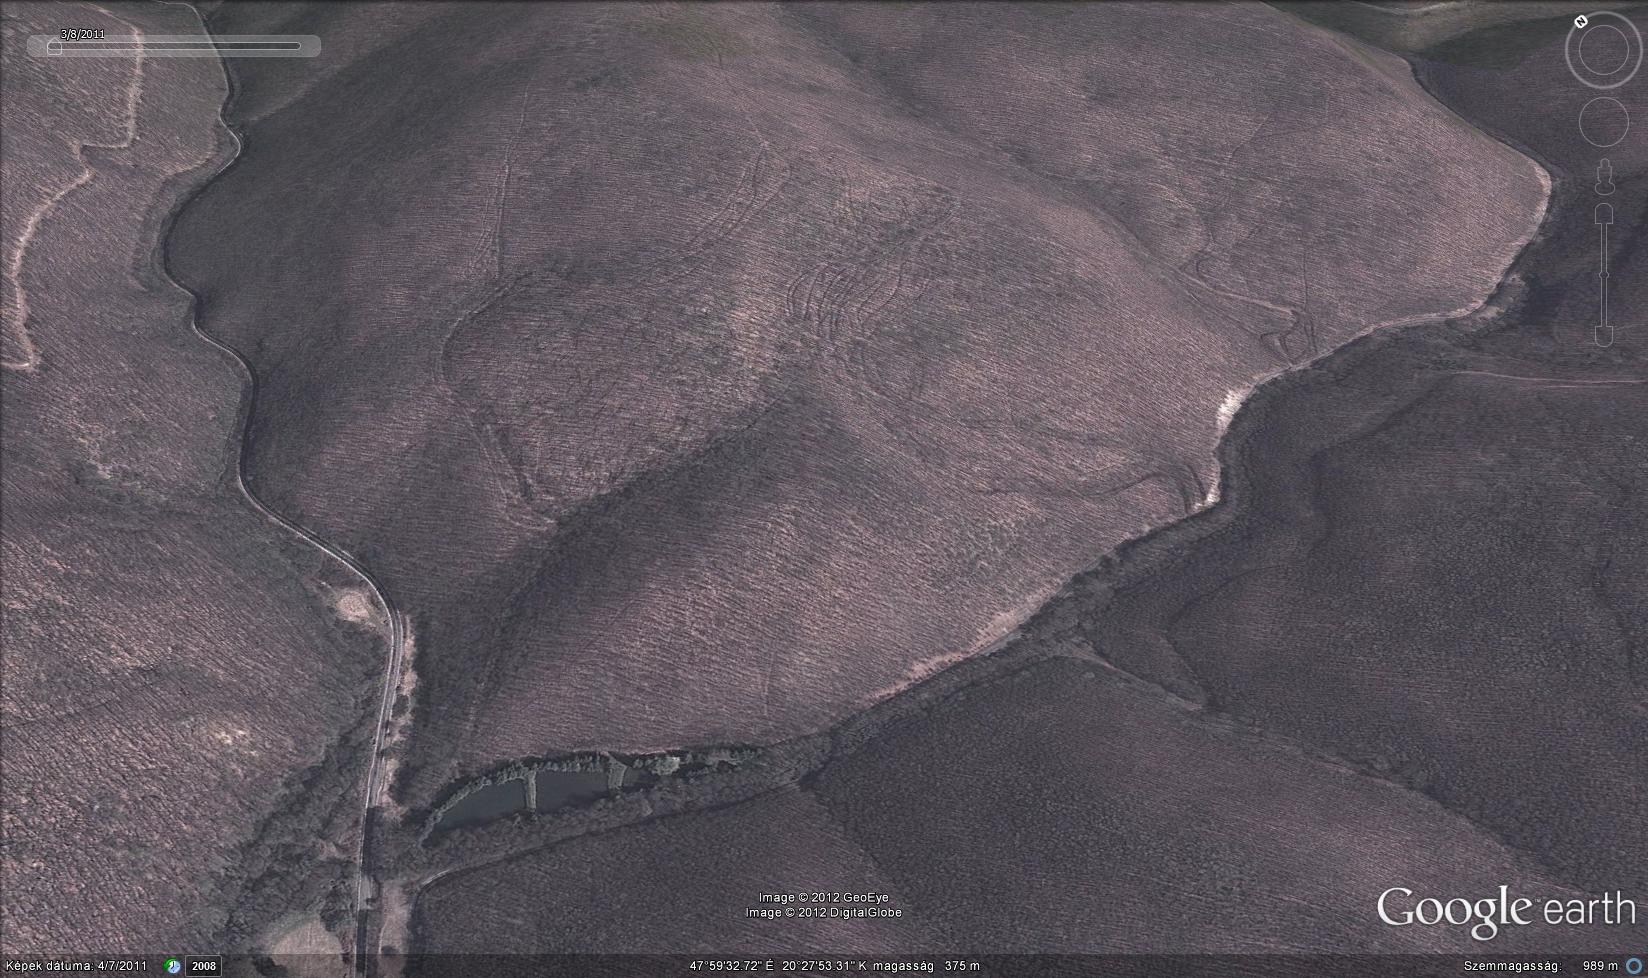 X kép: A Barát-rét és az Oldal-völgy (régen: Odor-völgy) elágazásától kiinduló régi szekérutak jól kivehetőek a GoogleEarth háromdimenziós modelljén